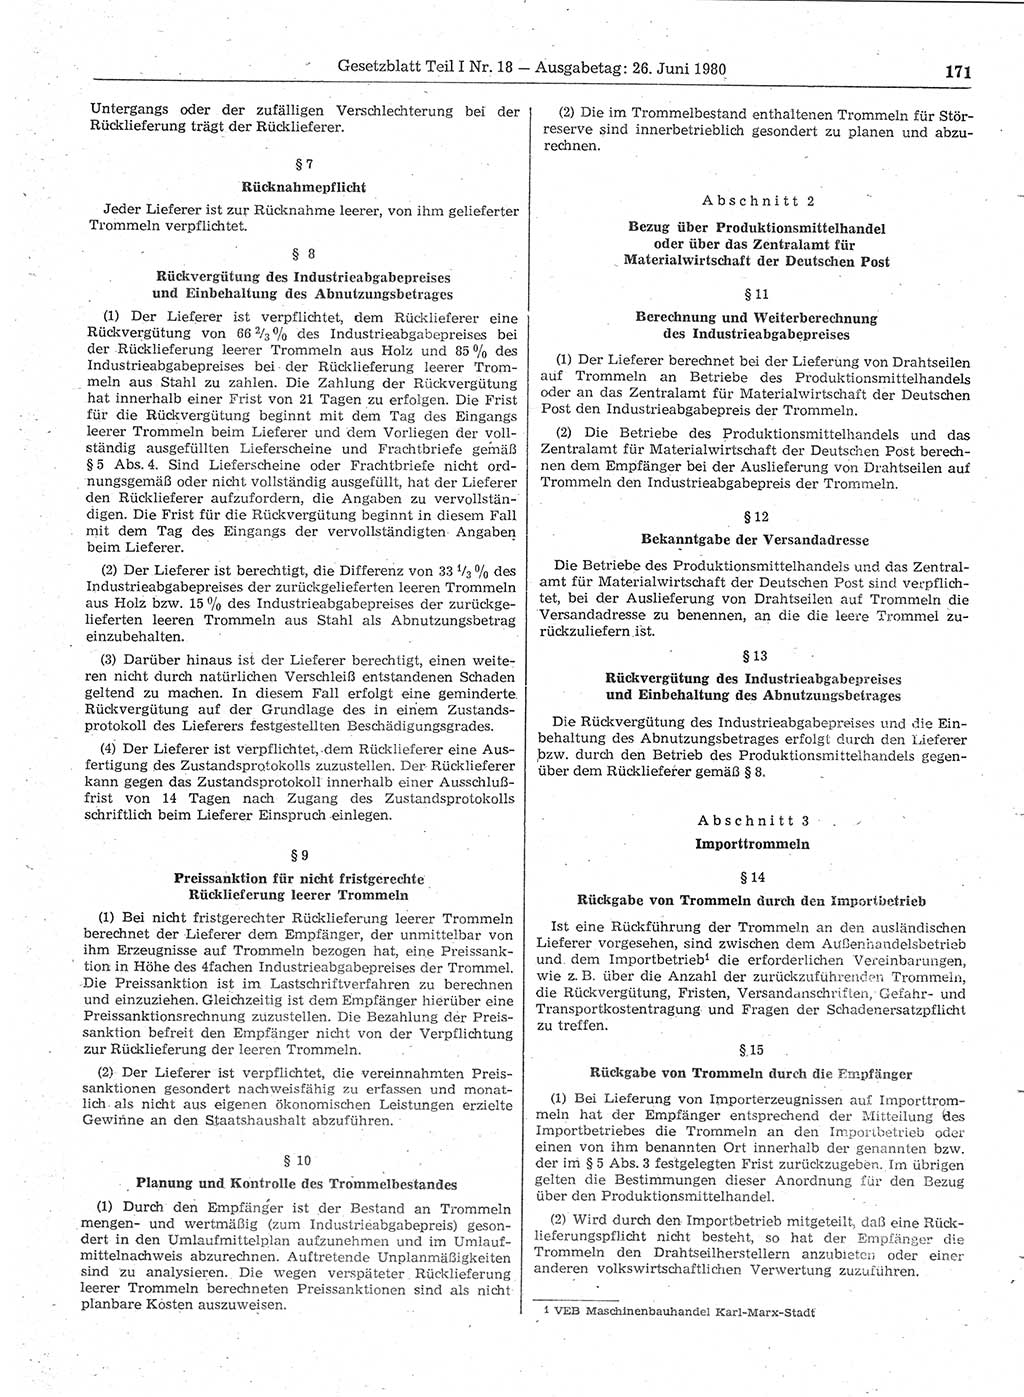 Gesetzblatt (GBl.) der Deutschen Demokratischen Republik (DDR) Teil Ⅰ 1980, Seite 171 (GBl. DDR Ⅰ 1980, S. 171)